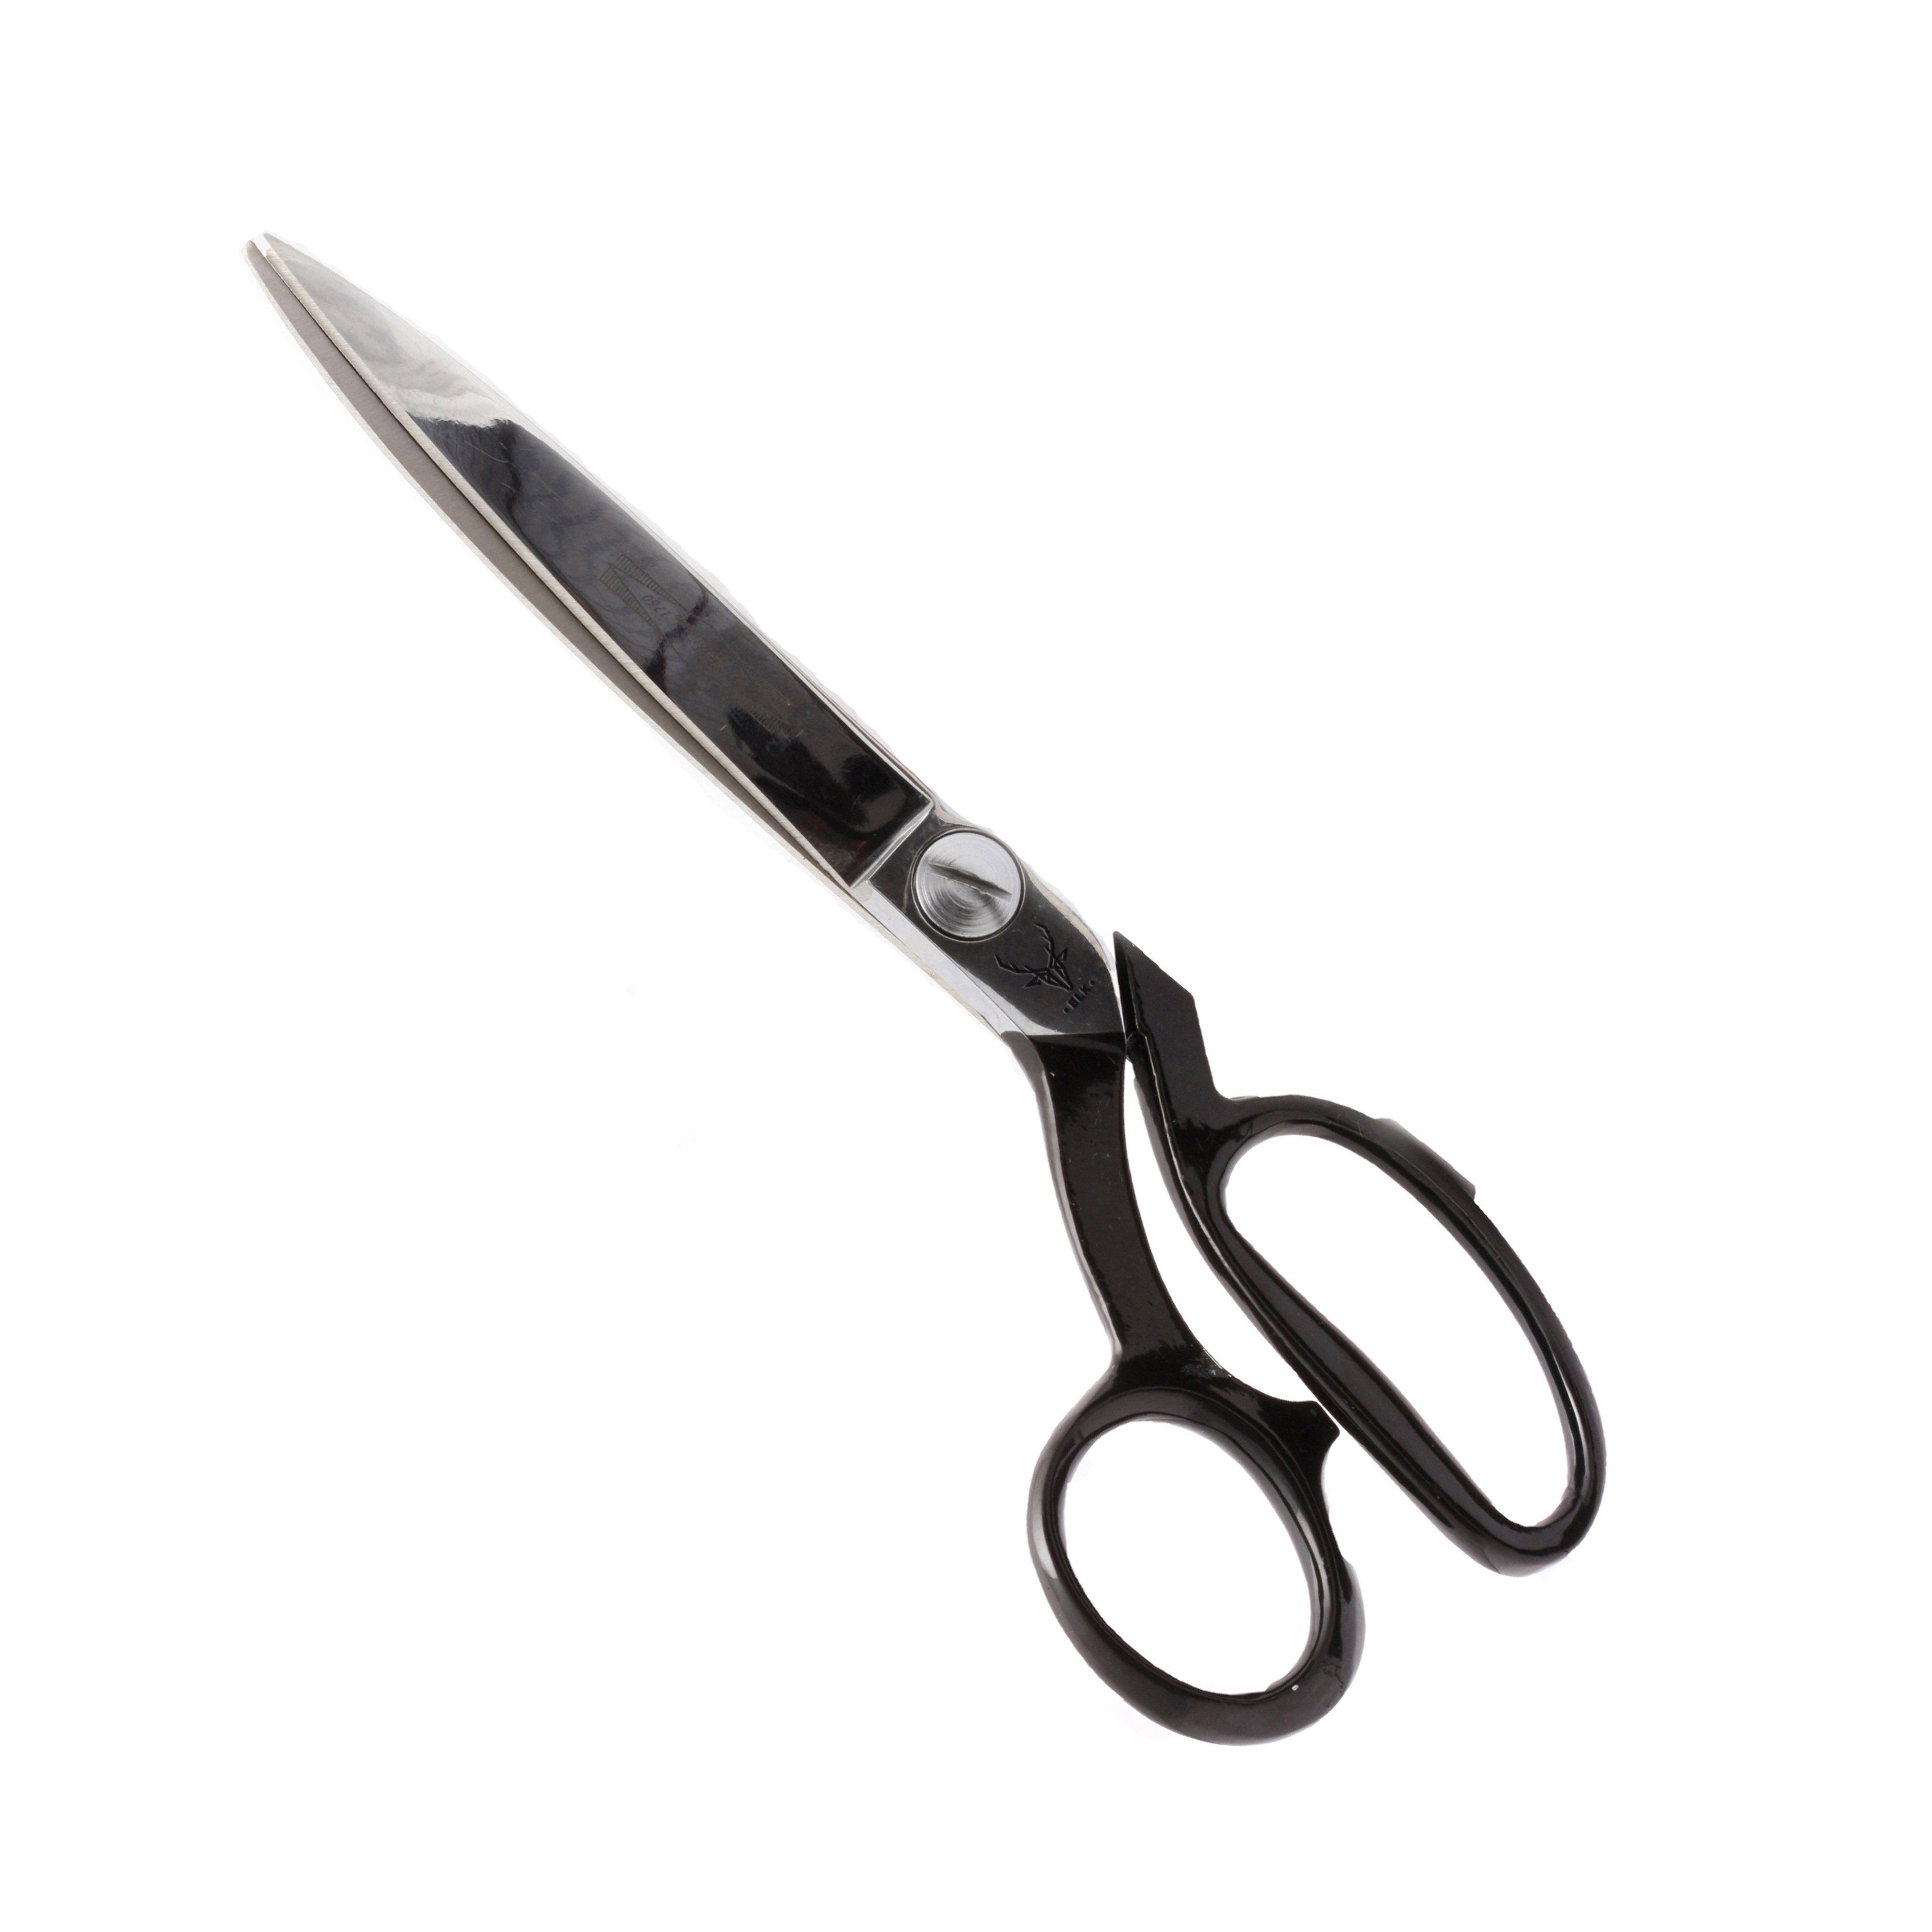 C30042 Applique Scissor Right Handed - 736370300425